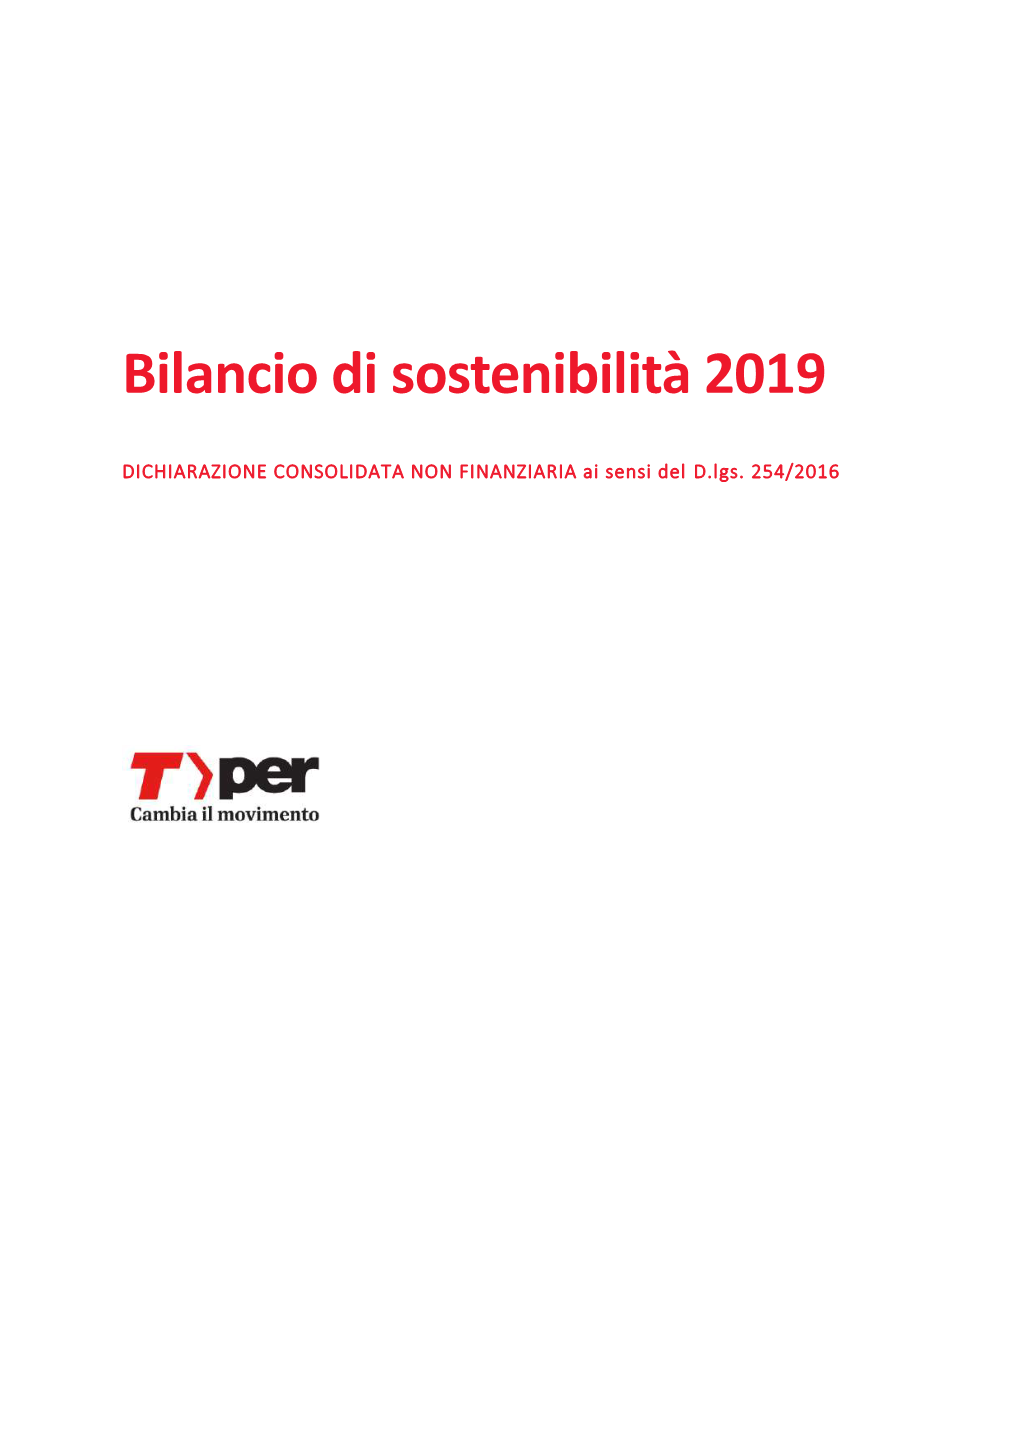 Bilancio Di Sostenibilità 2019 Tper